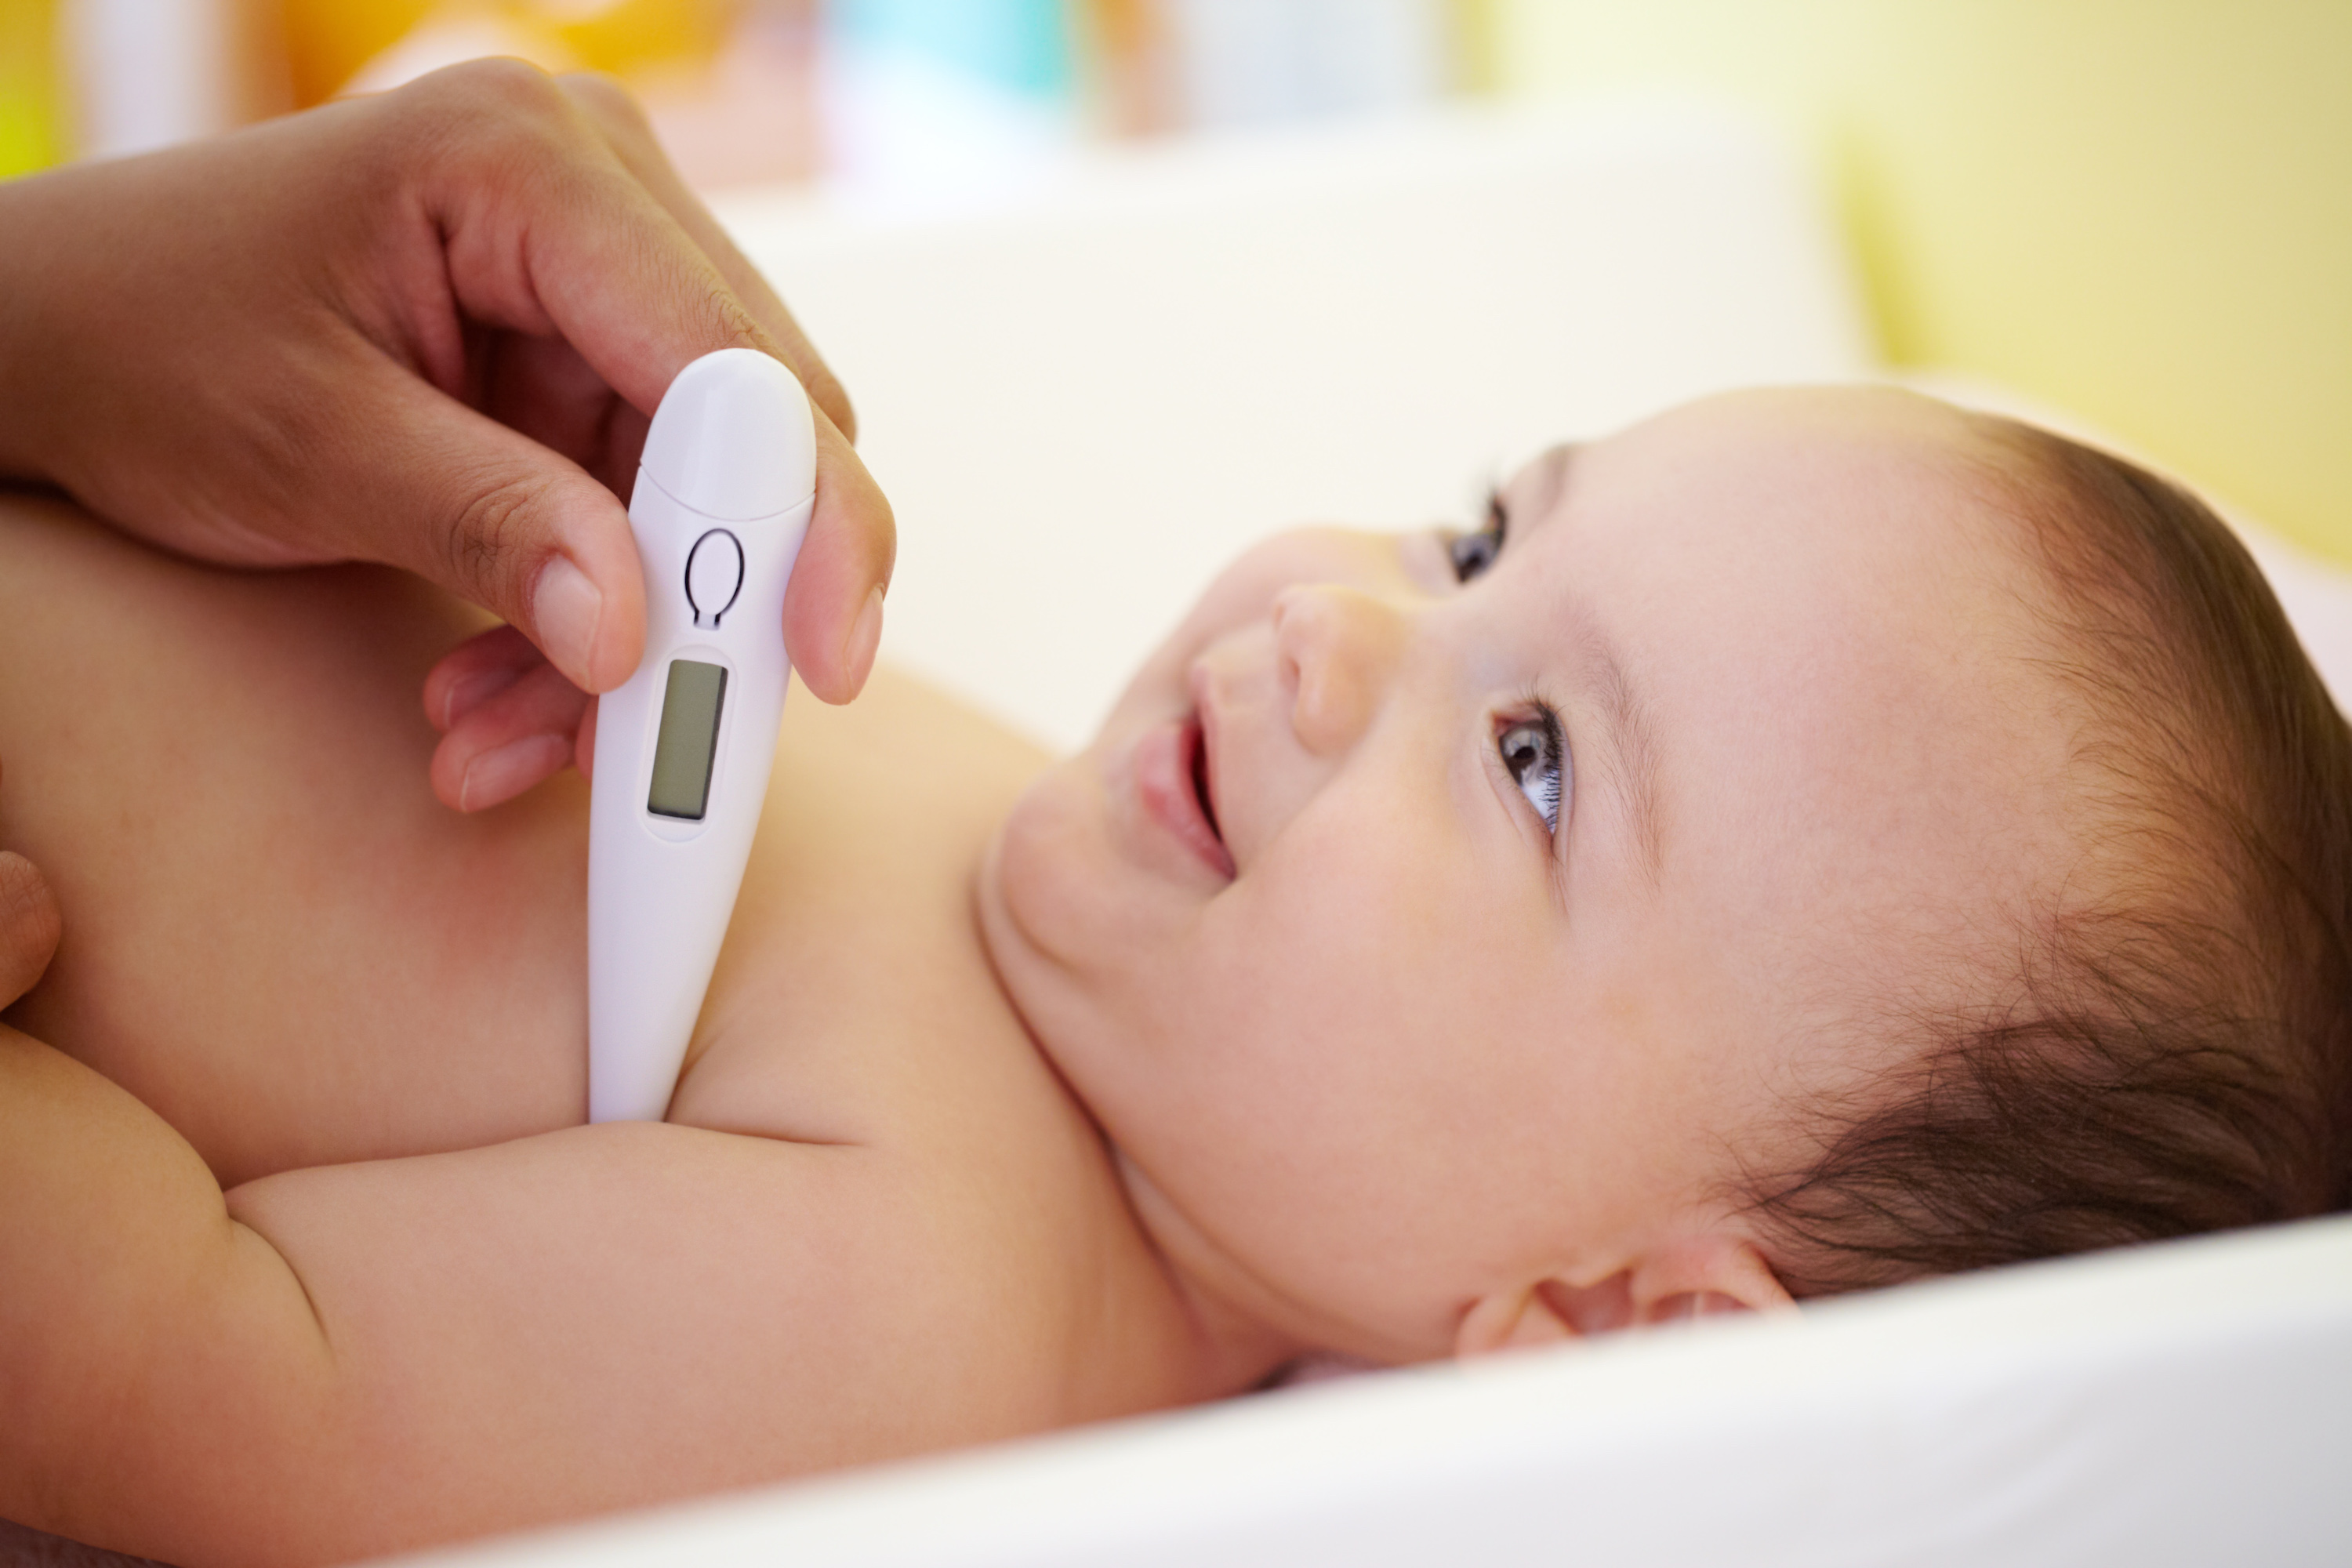 準確測量寶寶體溫，確認嬰兒是否發燒 